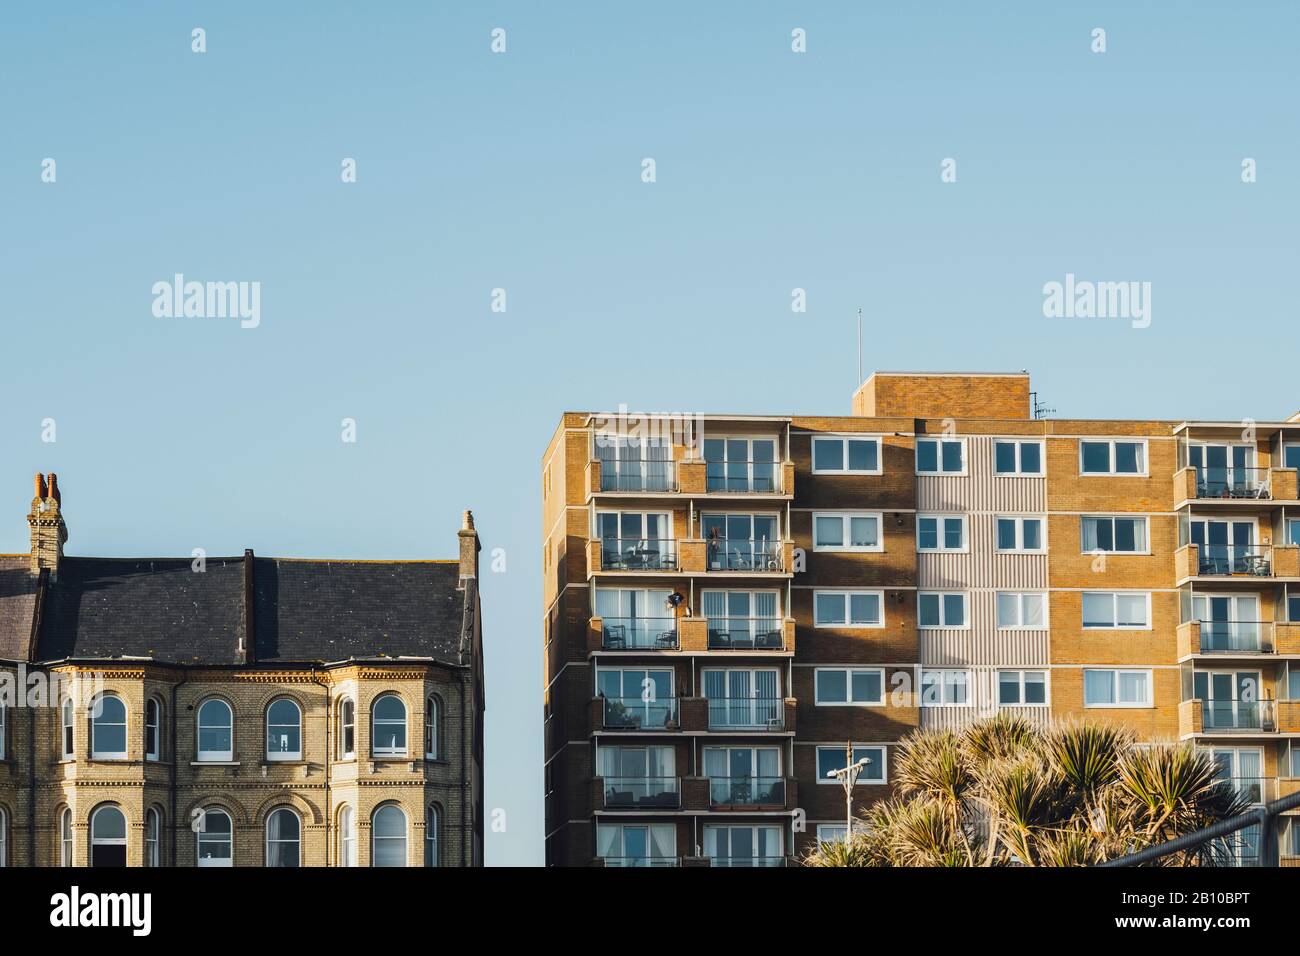 Facade, apartment buildings, Brighton, England Stock Photo